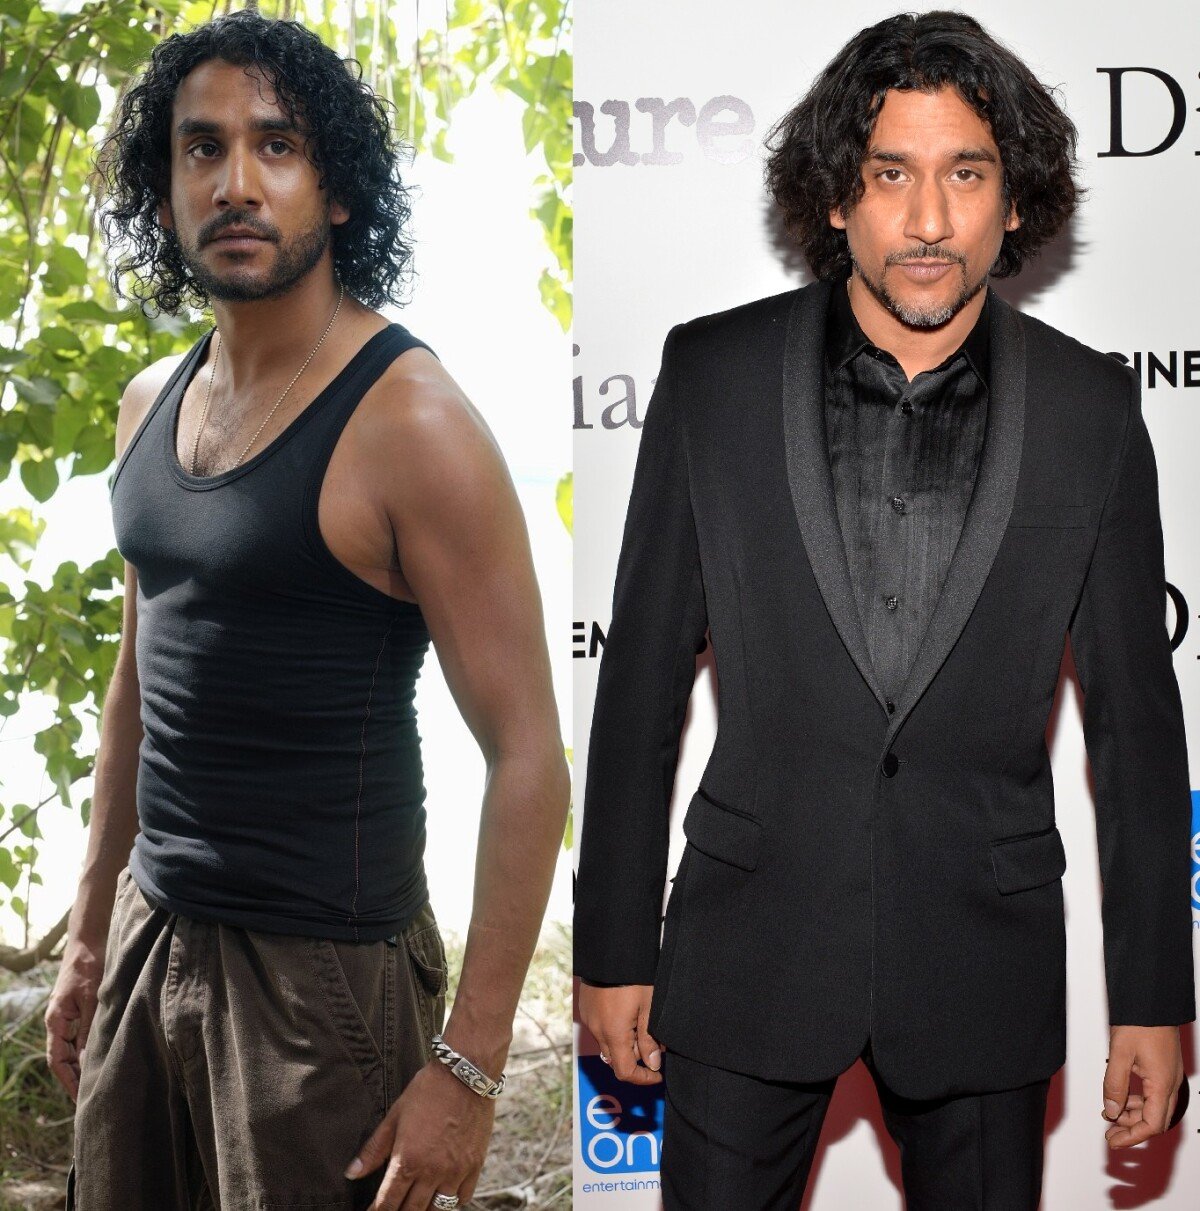 Foto: Naveen Andrews deu vida ao personagem Sayid Jarrah em 'Lost'. Ele não  embarcaria no avião que caiu na ilha, mas pediu que seu voo fosse adiado  para o dia seguinte. Ficou